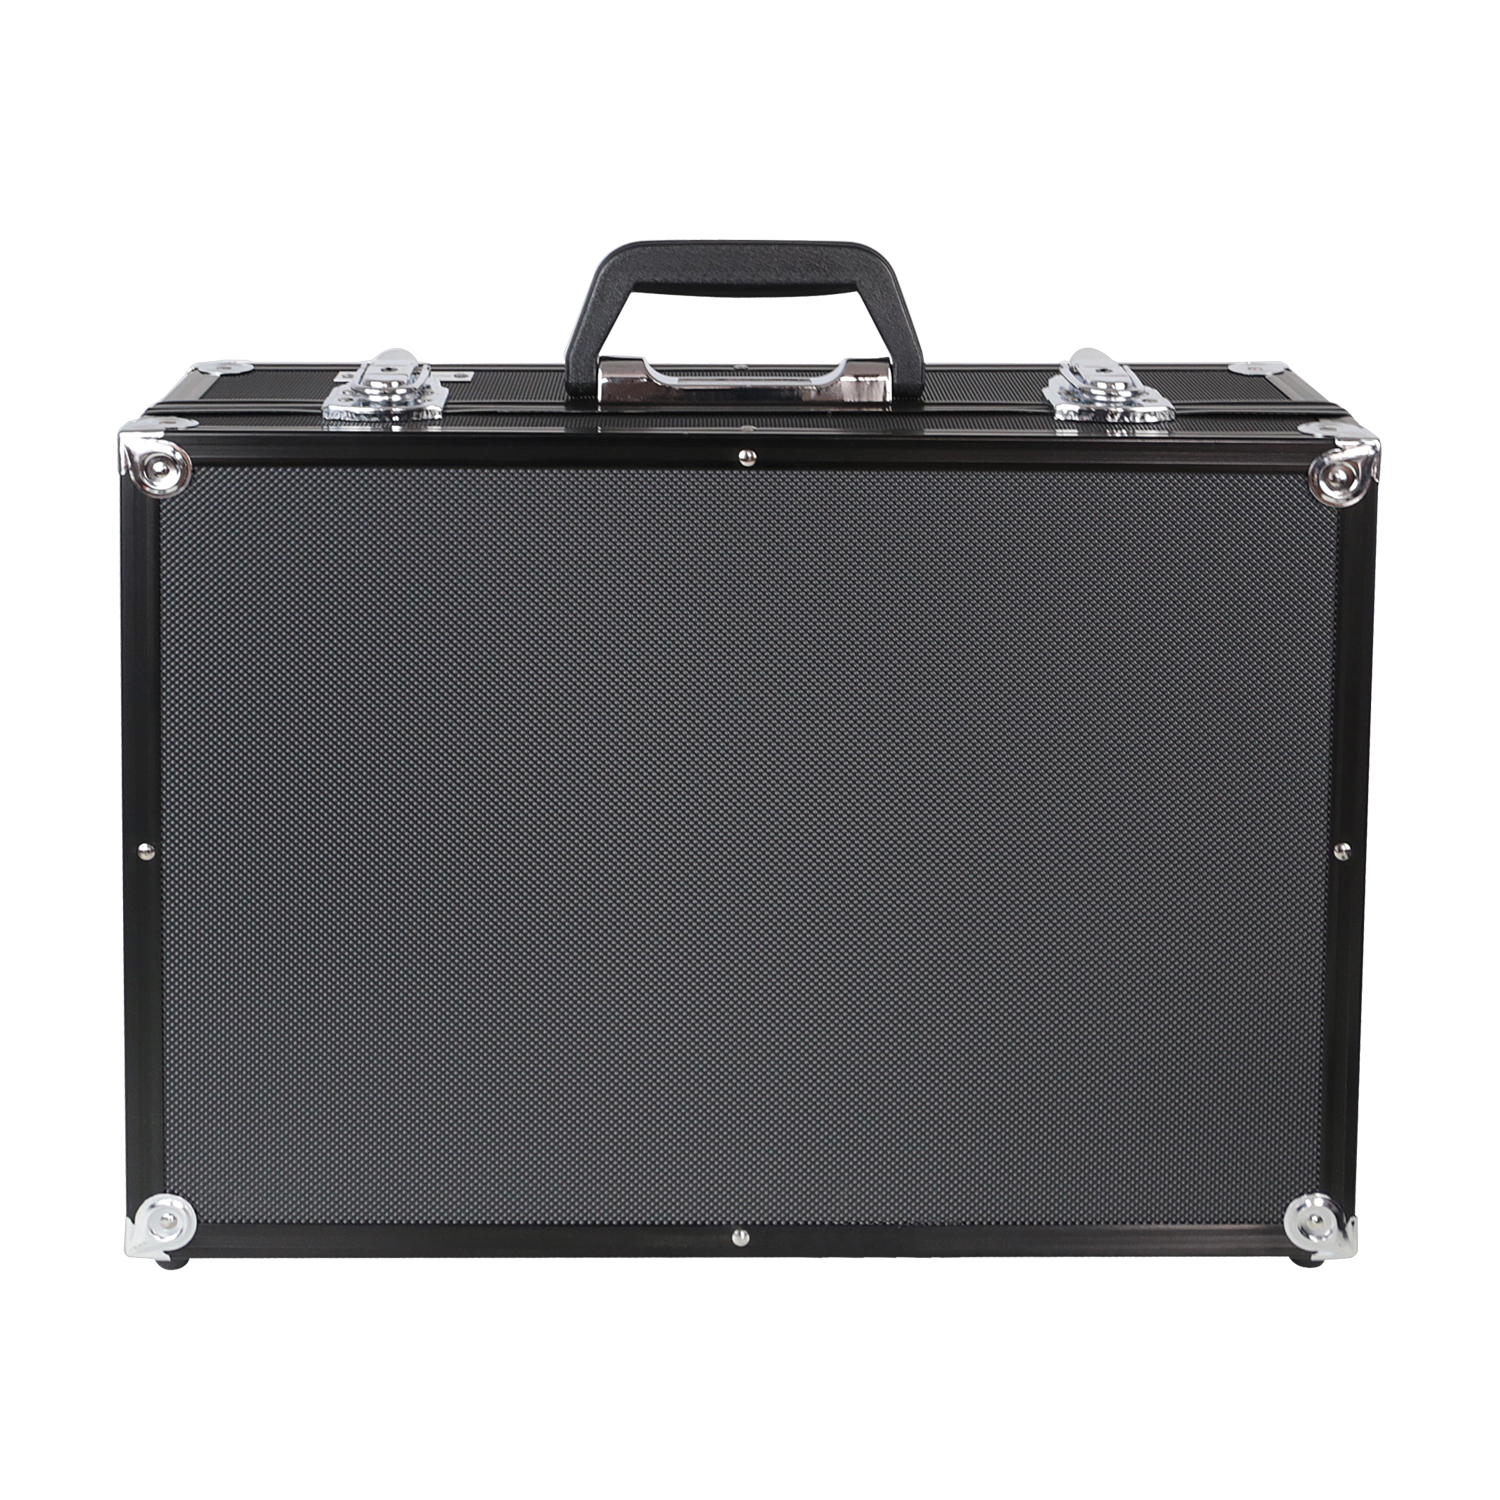 Koffergriff im 2er Set von HMF mit den Maßen 14 x 7 cm in Schwarz